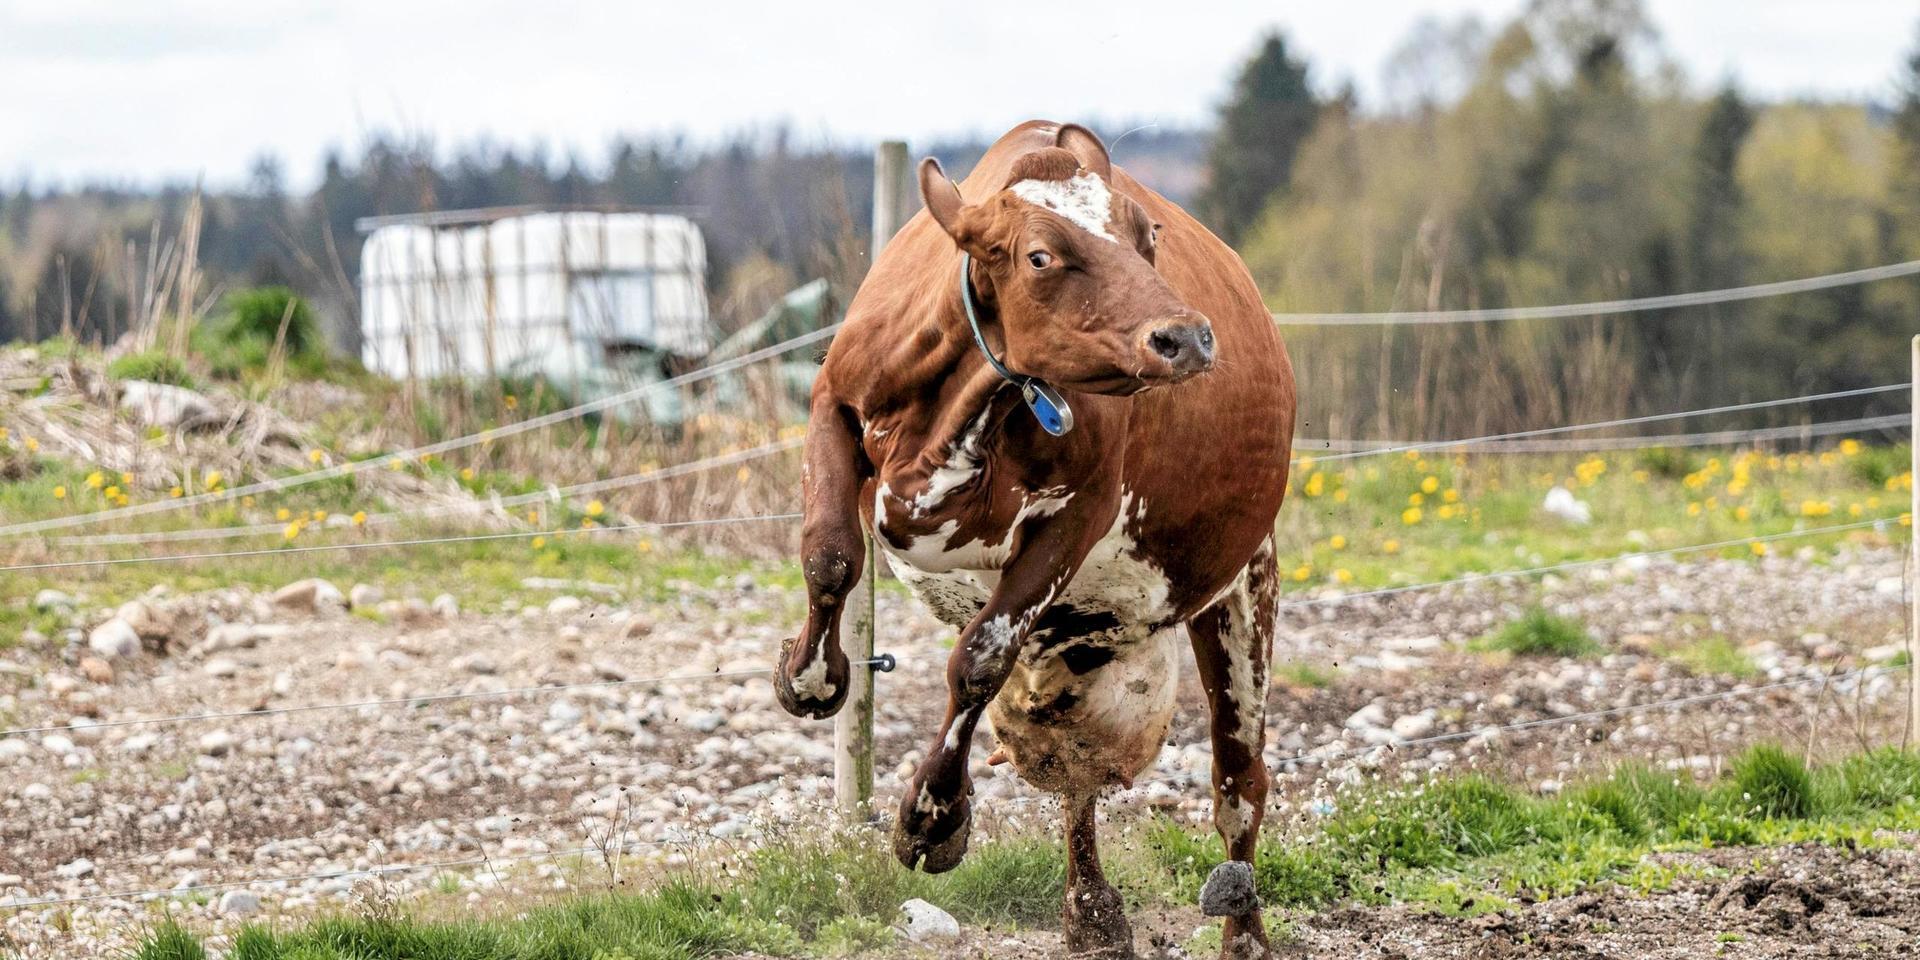 Även kosläppen kan numera få besök av djurrättsaktivister. Den här bilden är dock inte tagen hos den utsatte mjölkbonden i Halland.